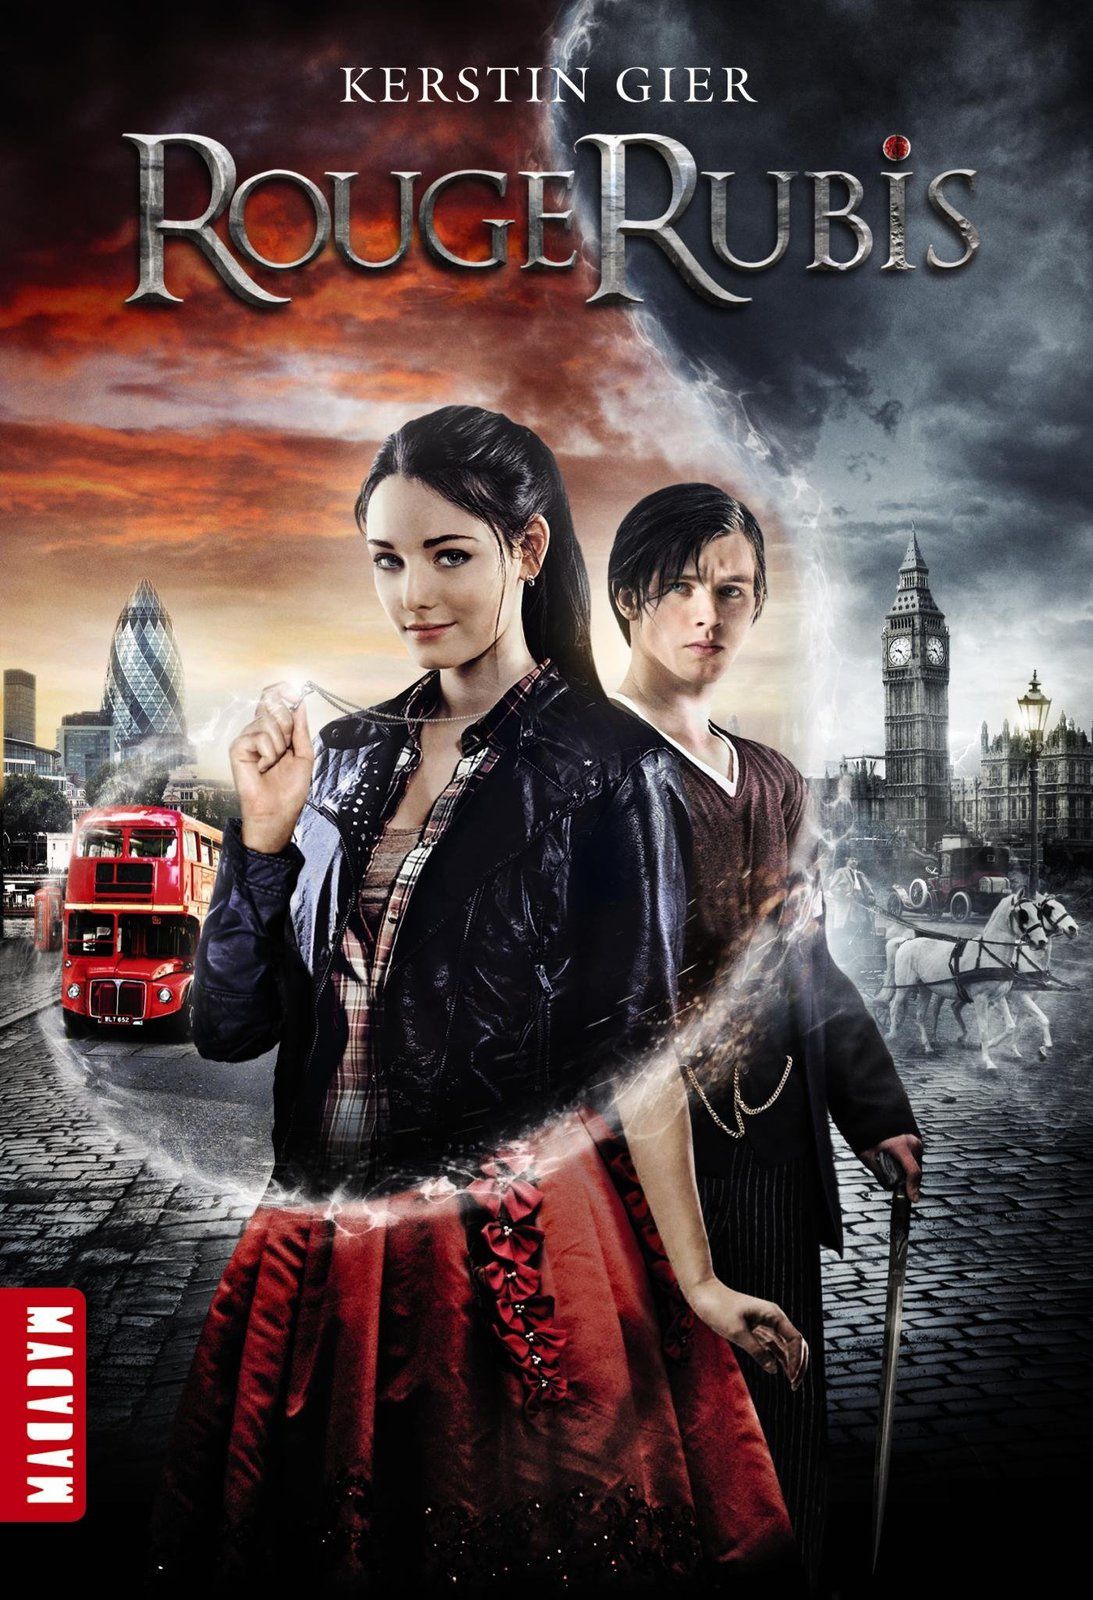 Couverture de la réédition (sortie en septembre 2014) qui reprend l'affiche du film.